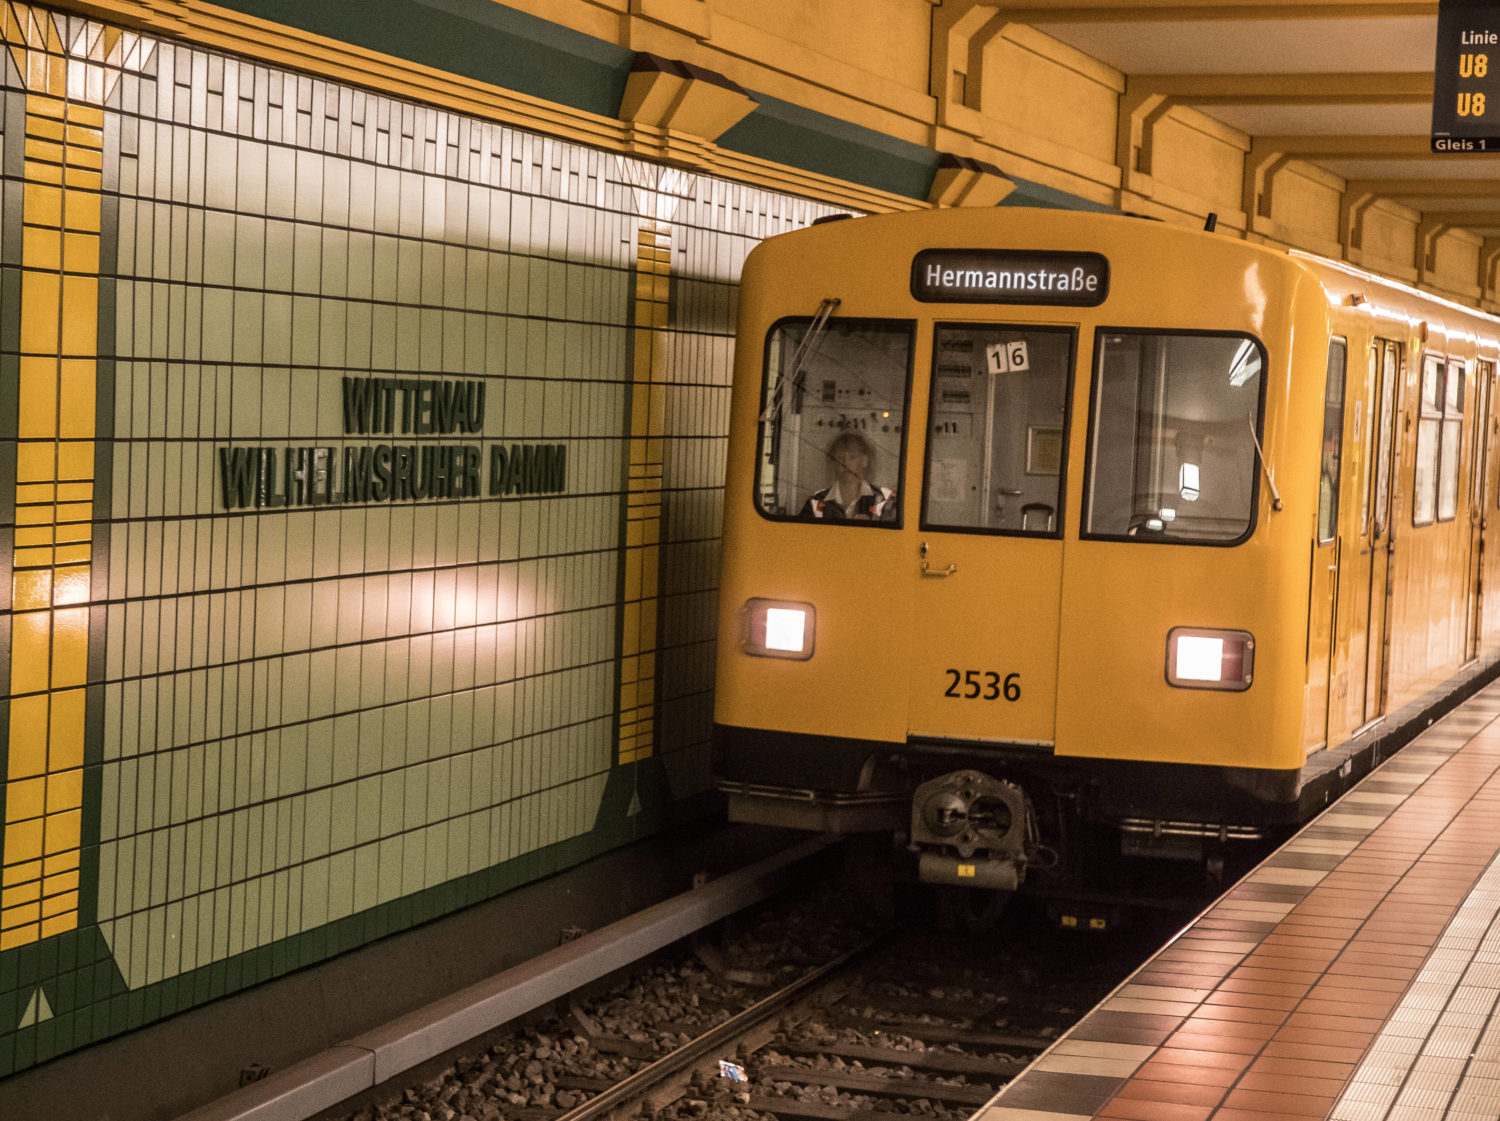 Stilisierte Säulen, gelb und grün: Willkommen in Wittenau, hier beginnt die Fahrt mit der U8. Foto: Imago Images/Olaf Wagner